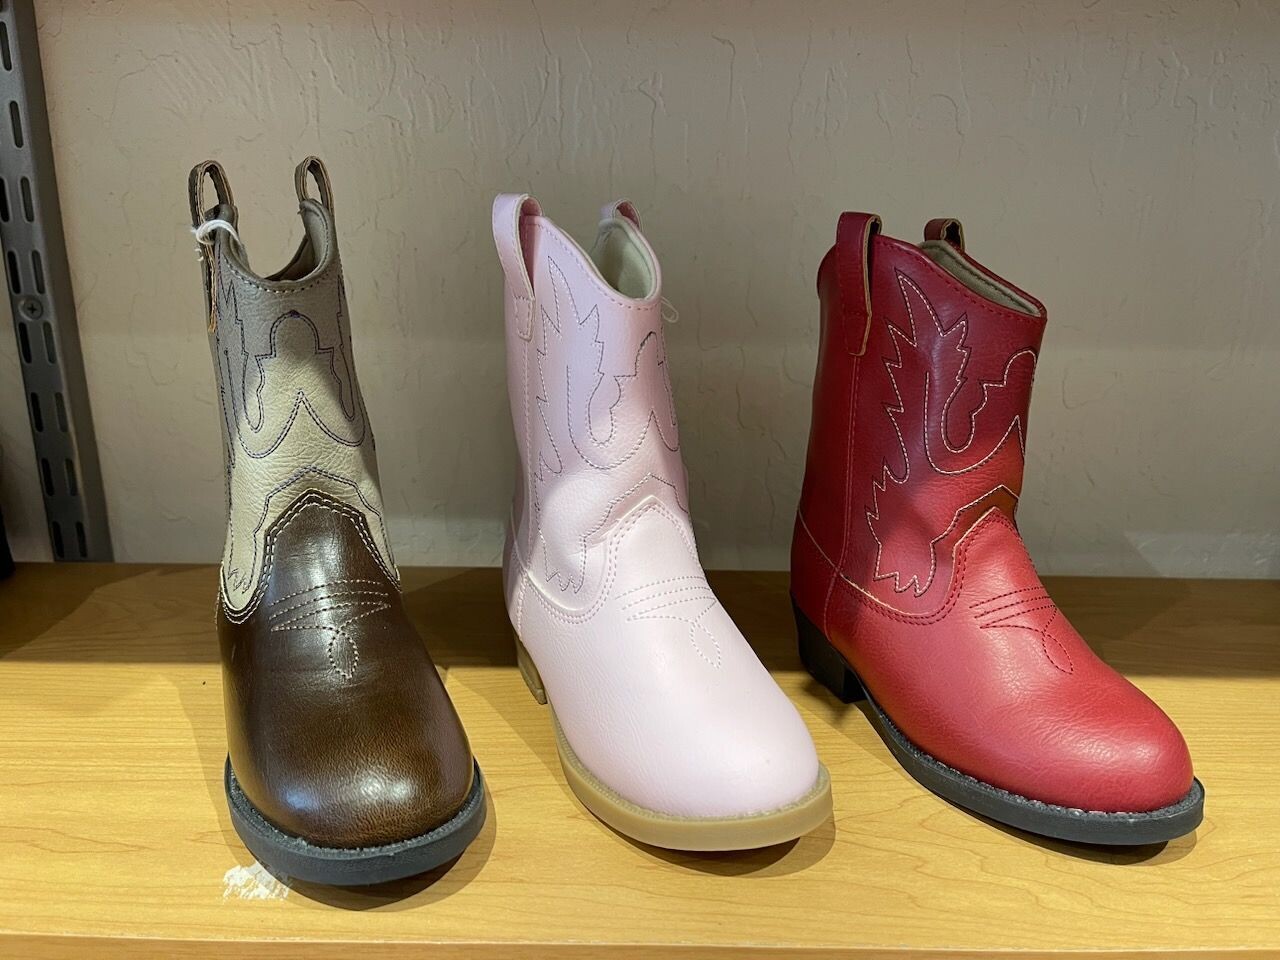 Children's Western boots